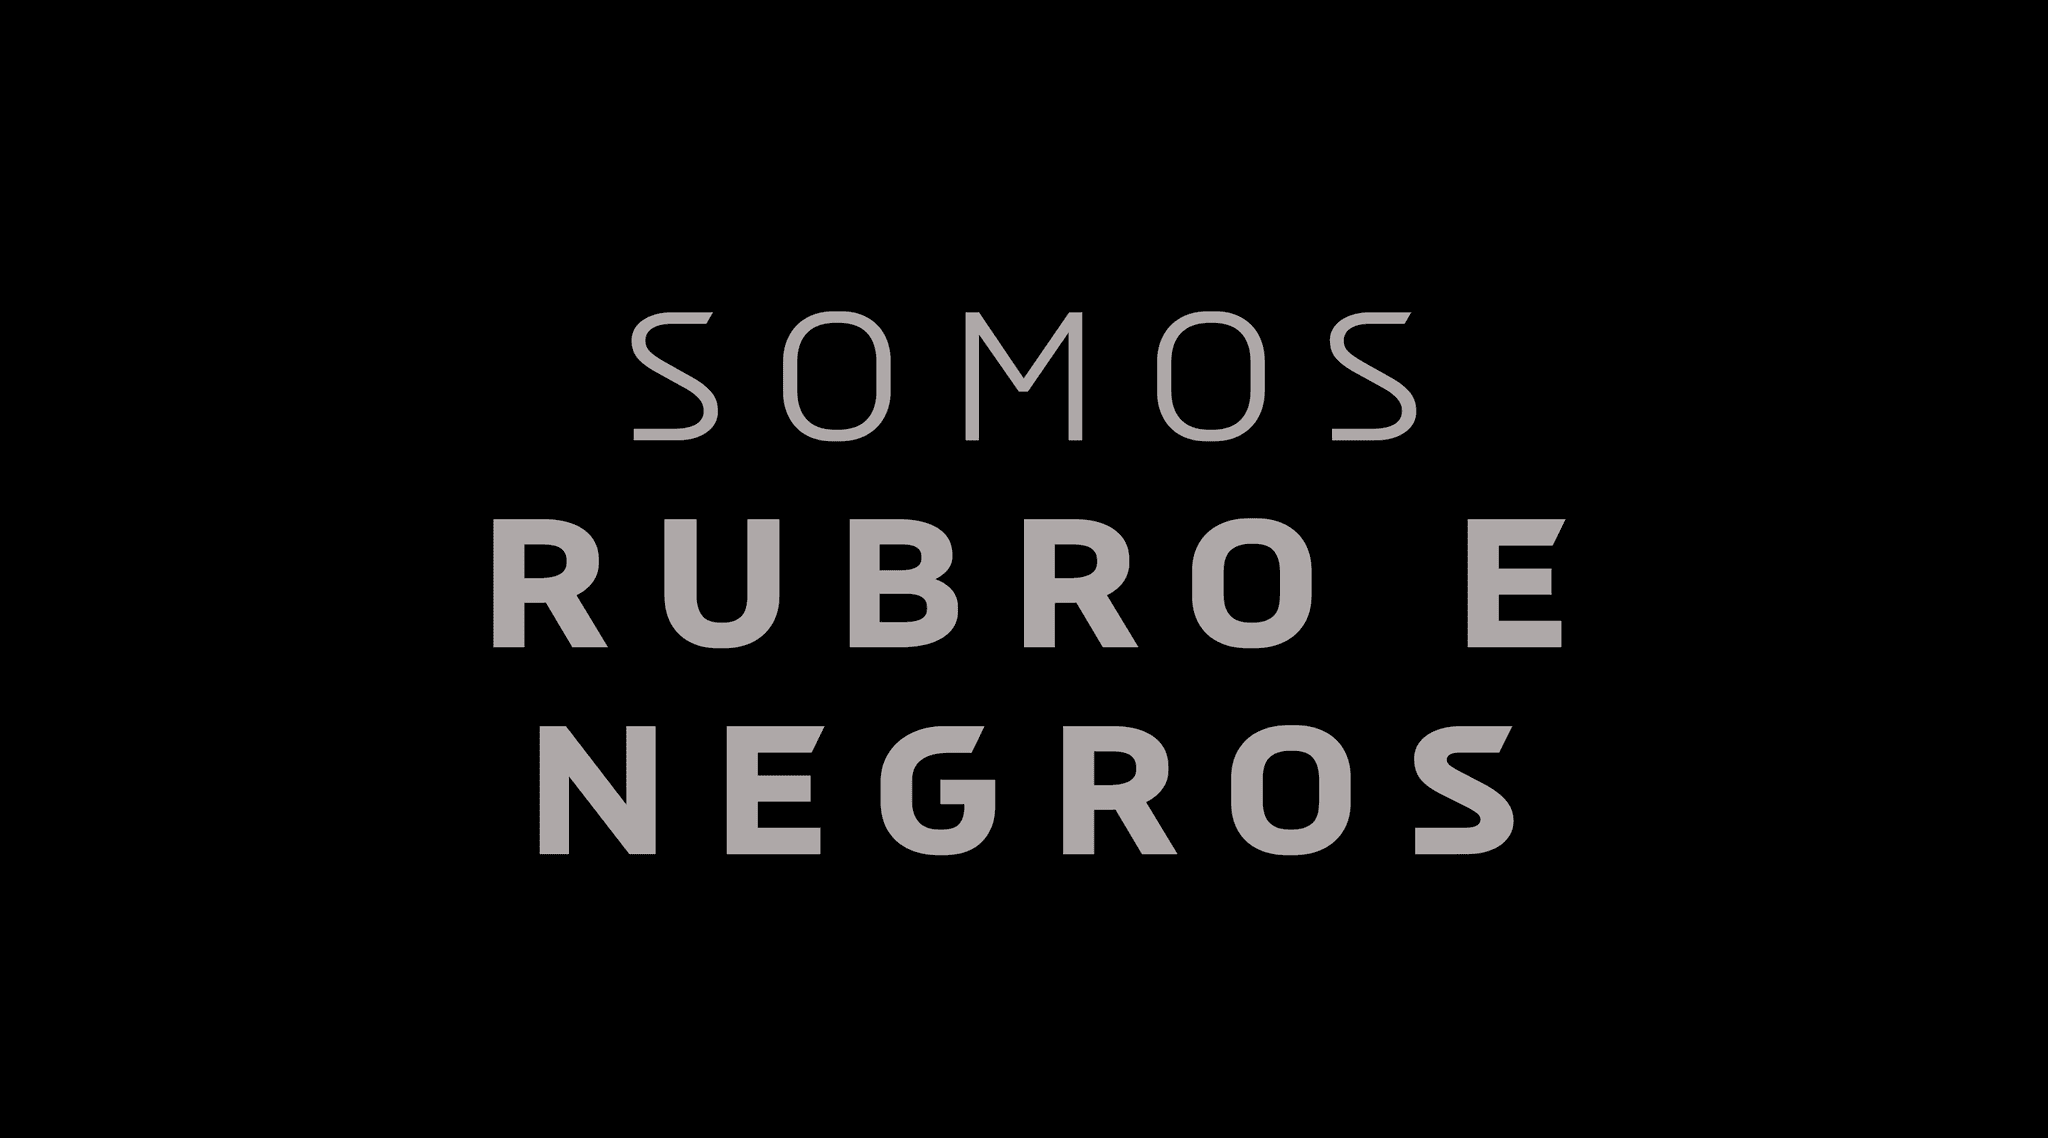 Athletico condena supostos casos de racismo na Baixada: “Somos rubro e negros”